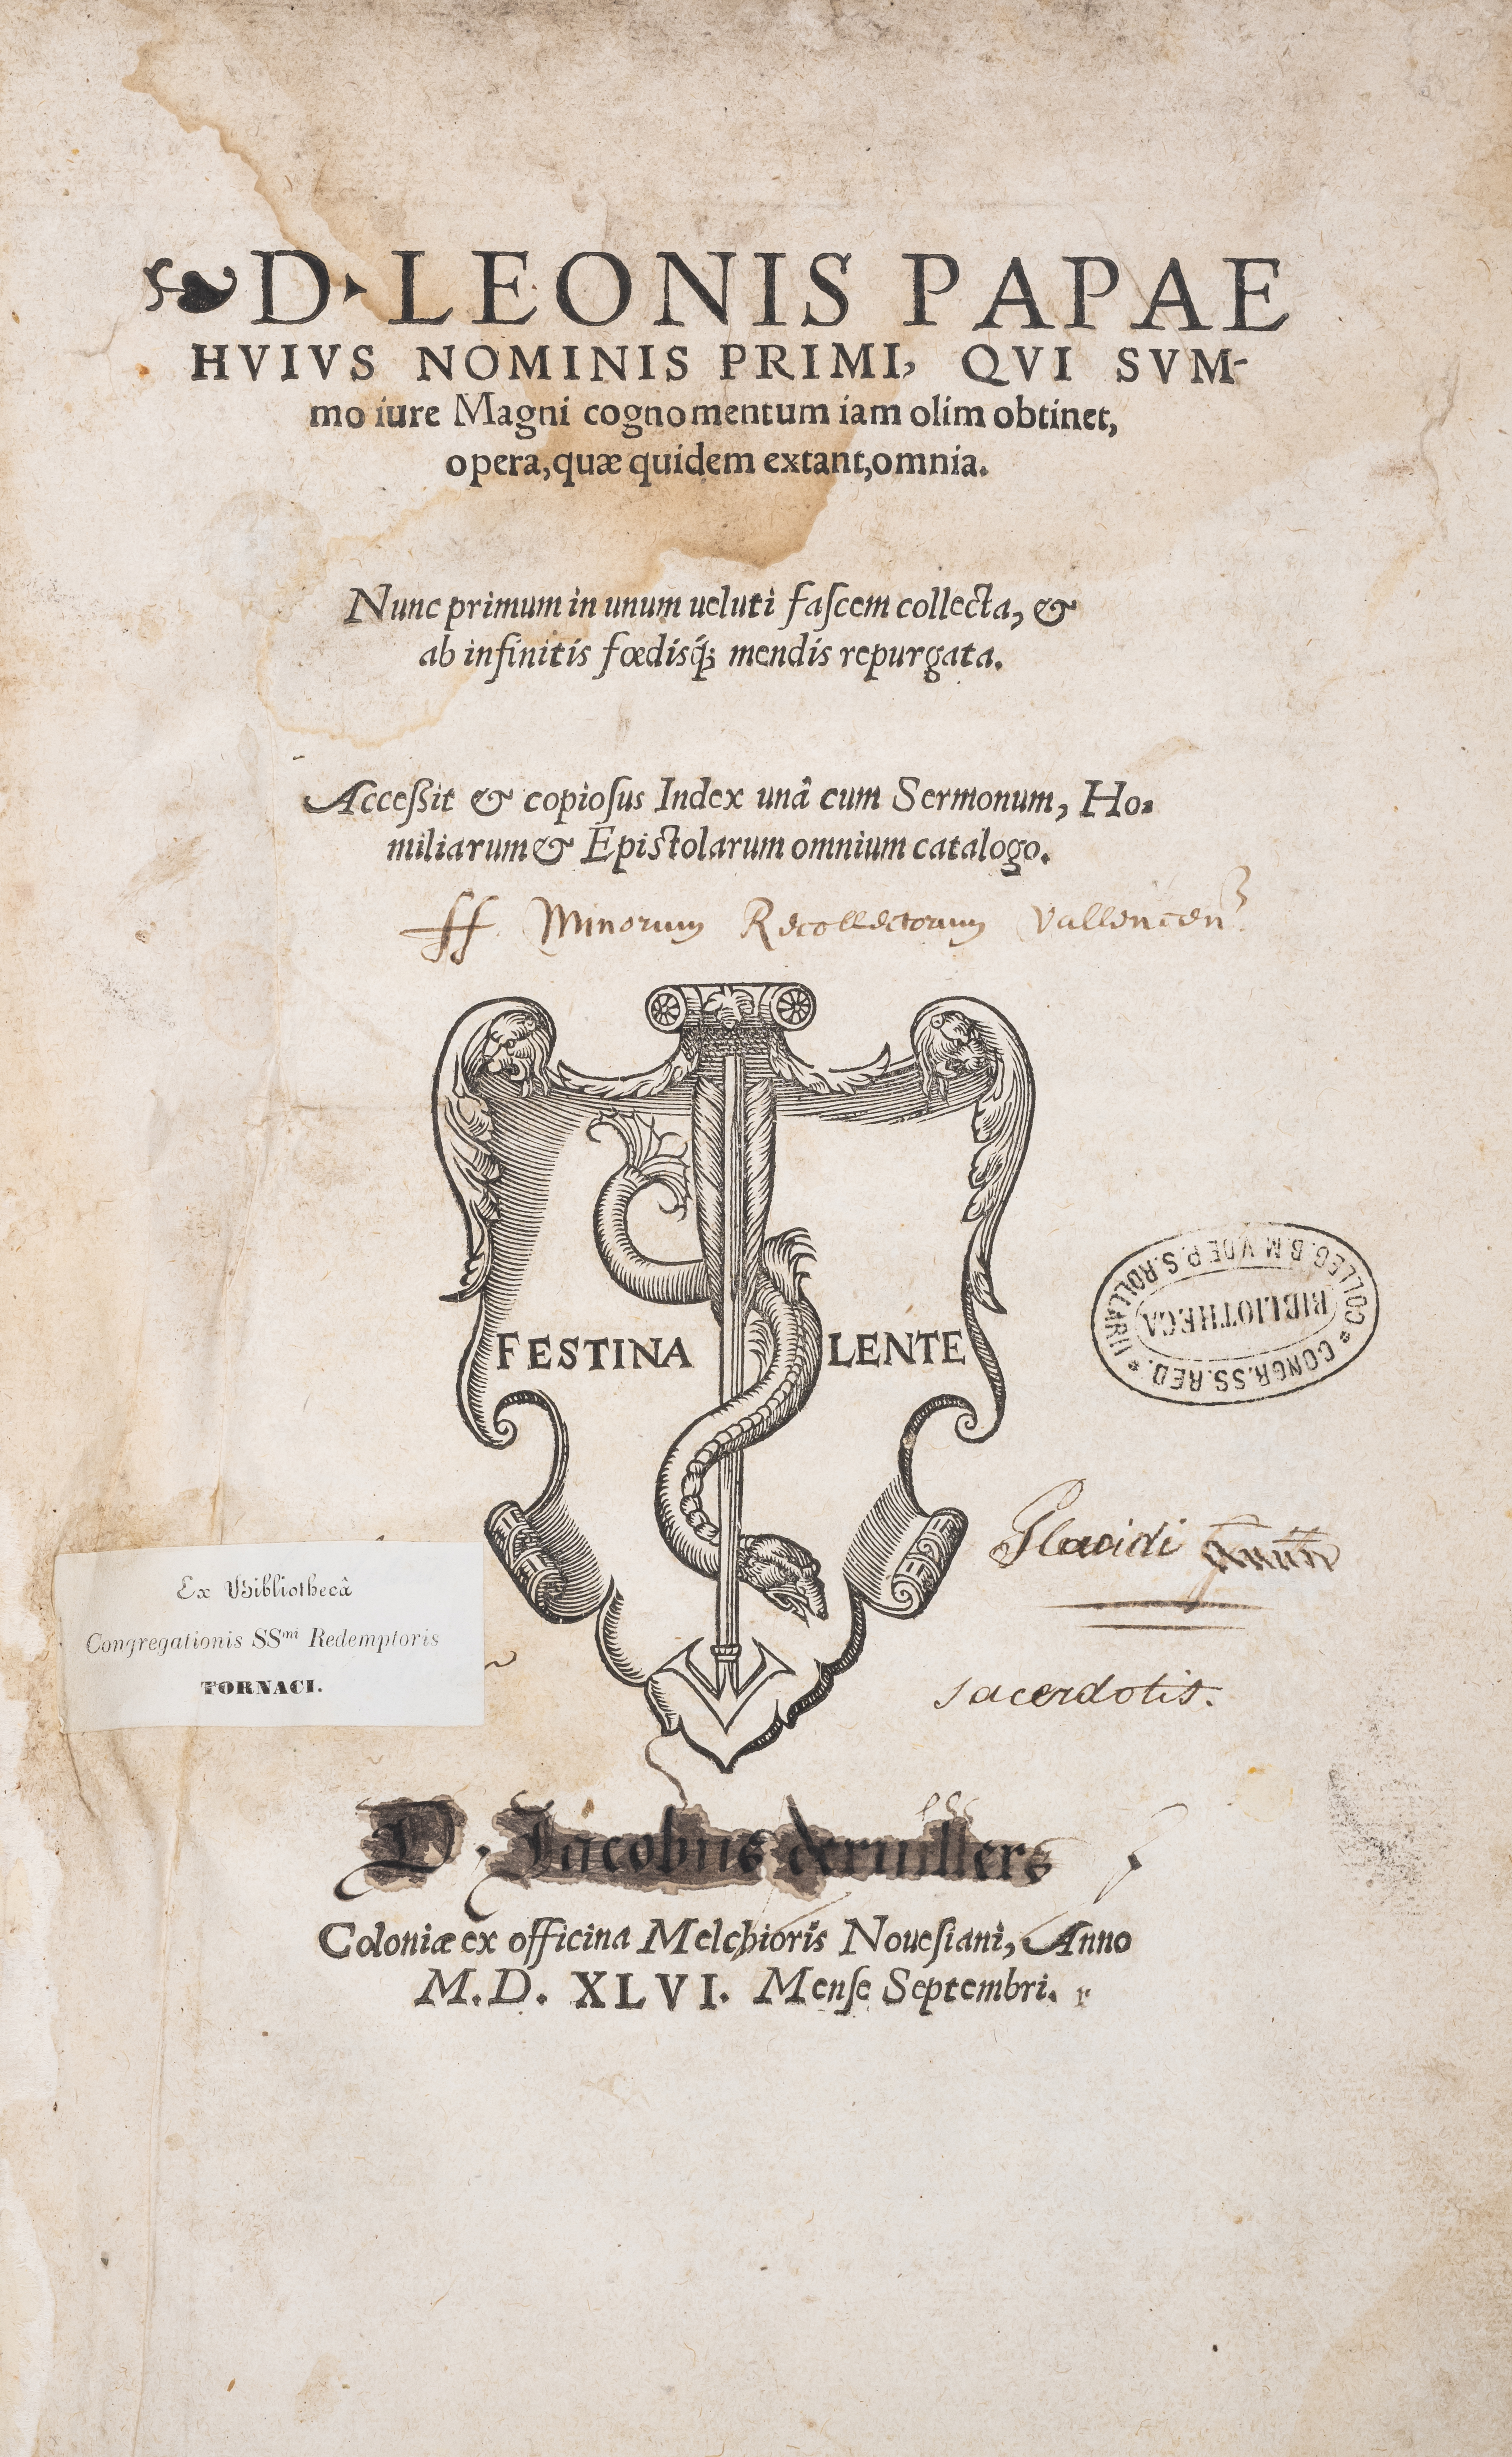 Leo I (Pope) Opera, quae quidem extant, omnia, first Canisius edition, Cologne, Melchior von Neus...